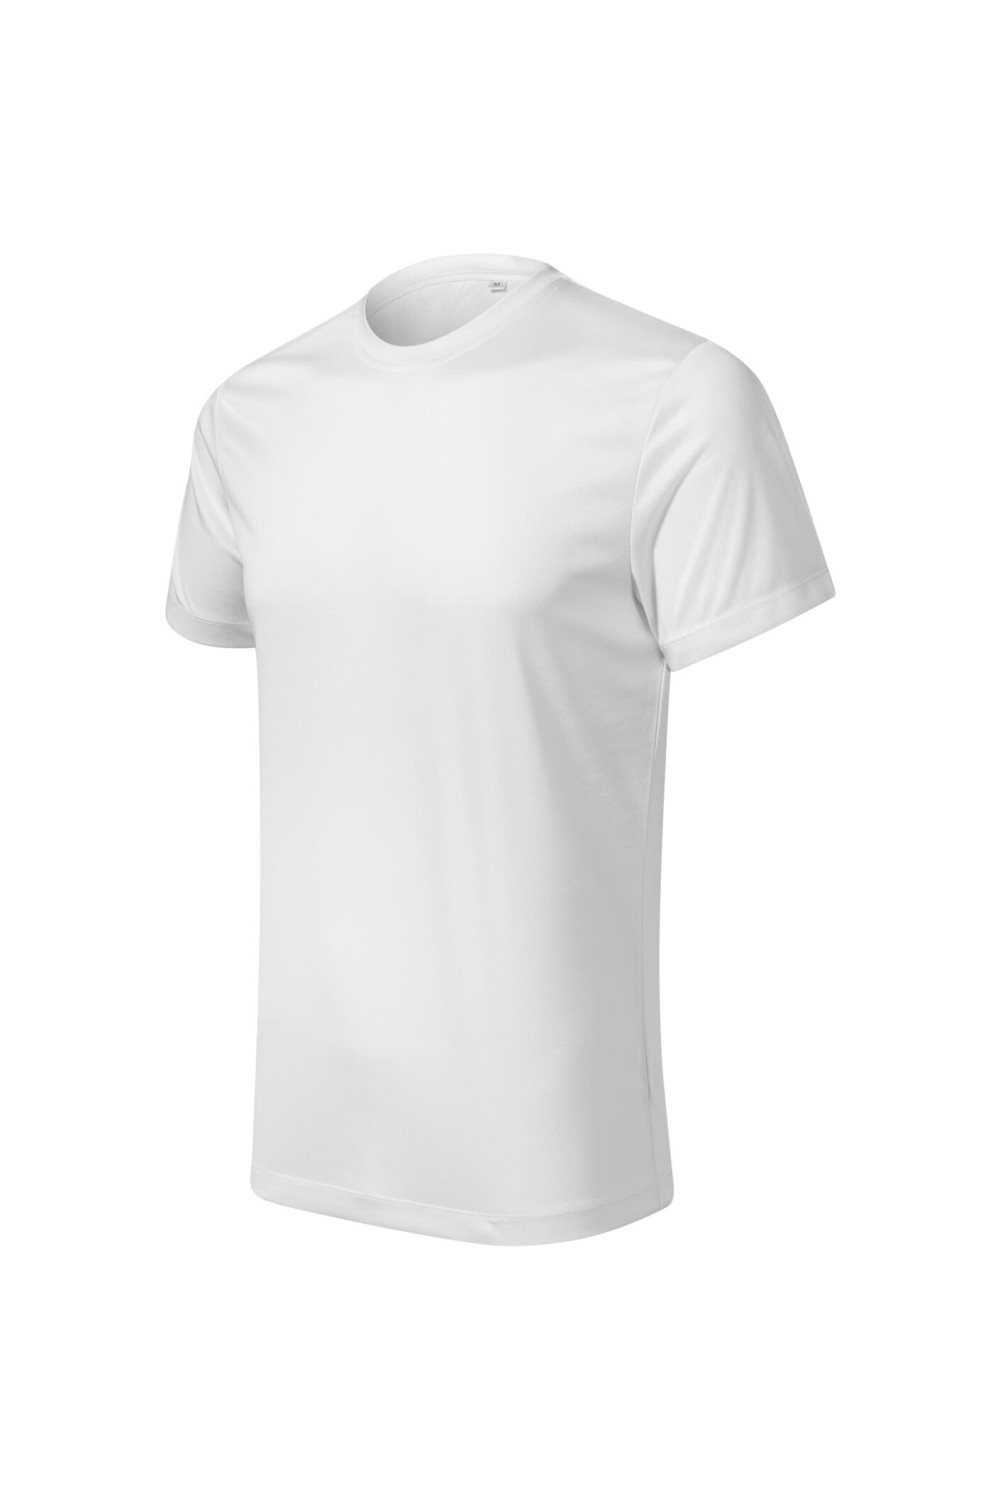 CHANCE (GRS) 810 MALFINI ADLER Koszulka męska t-shirt sportowy biały